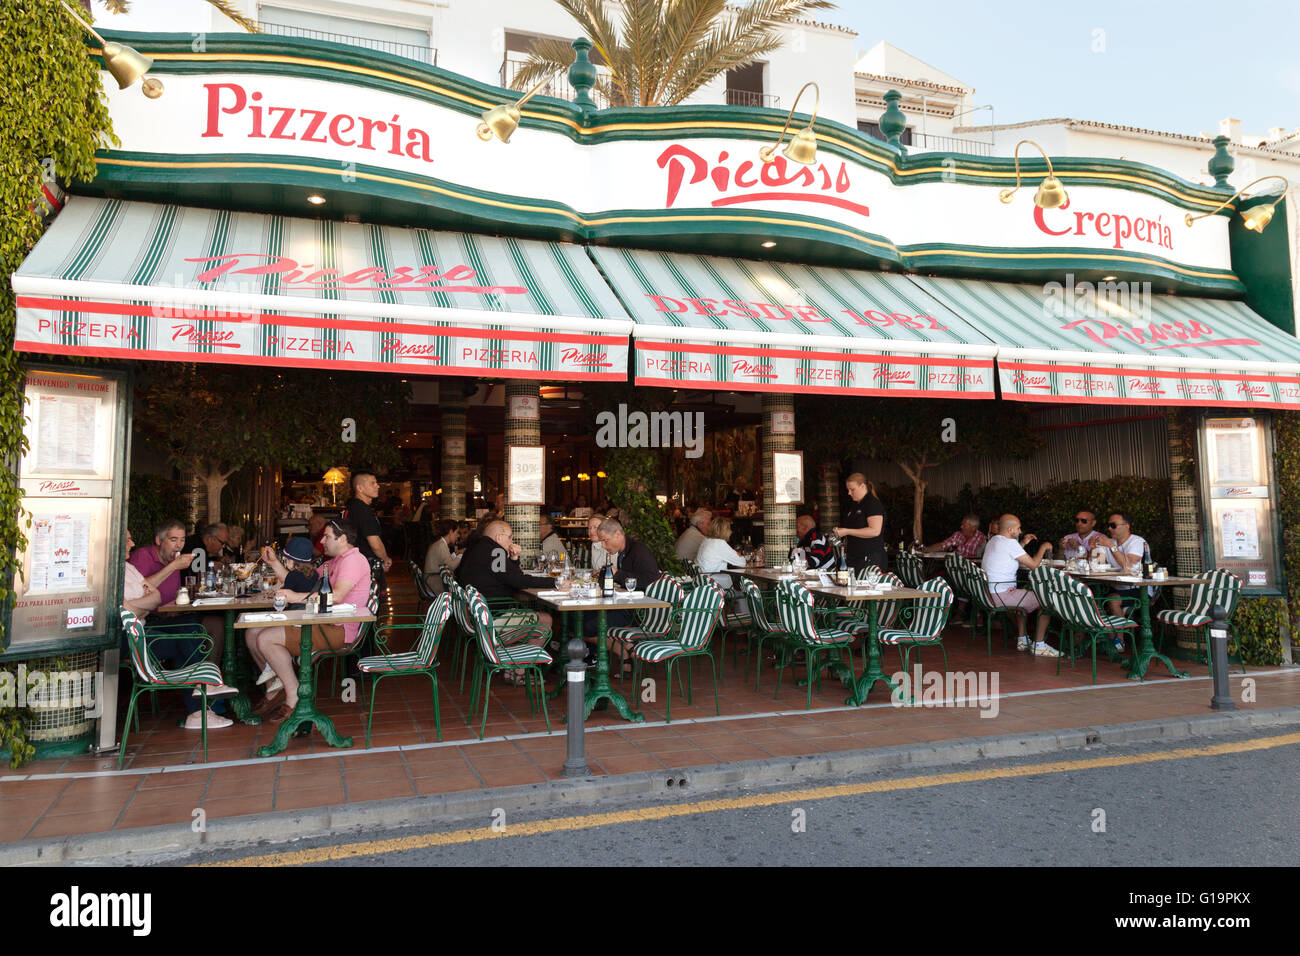 Pizzeria crêperie restaurant Picasso et l'extérieur, le port de Puerto Banus, Marbella, Costa del Sol, Andalousie, Espagne Banque D'Images